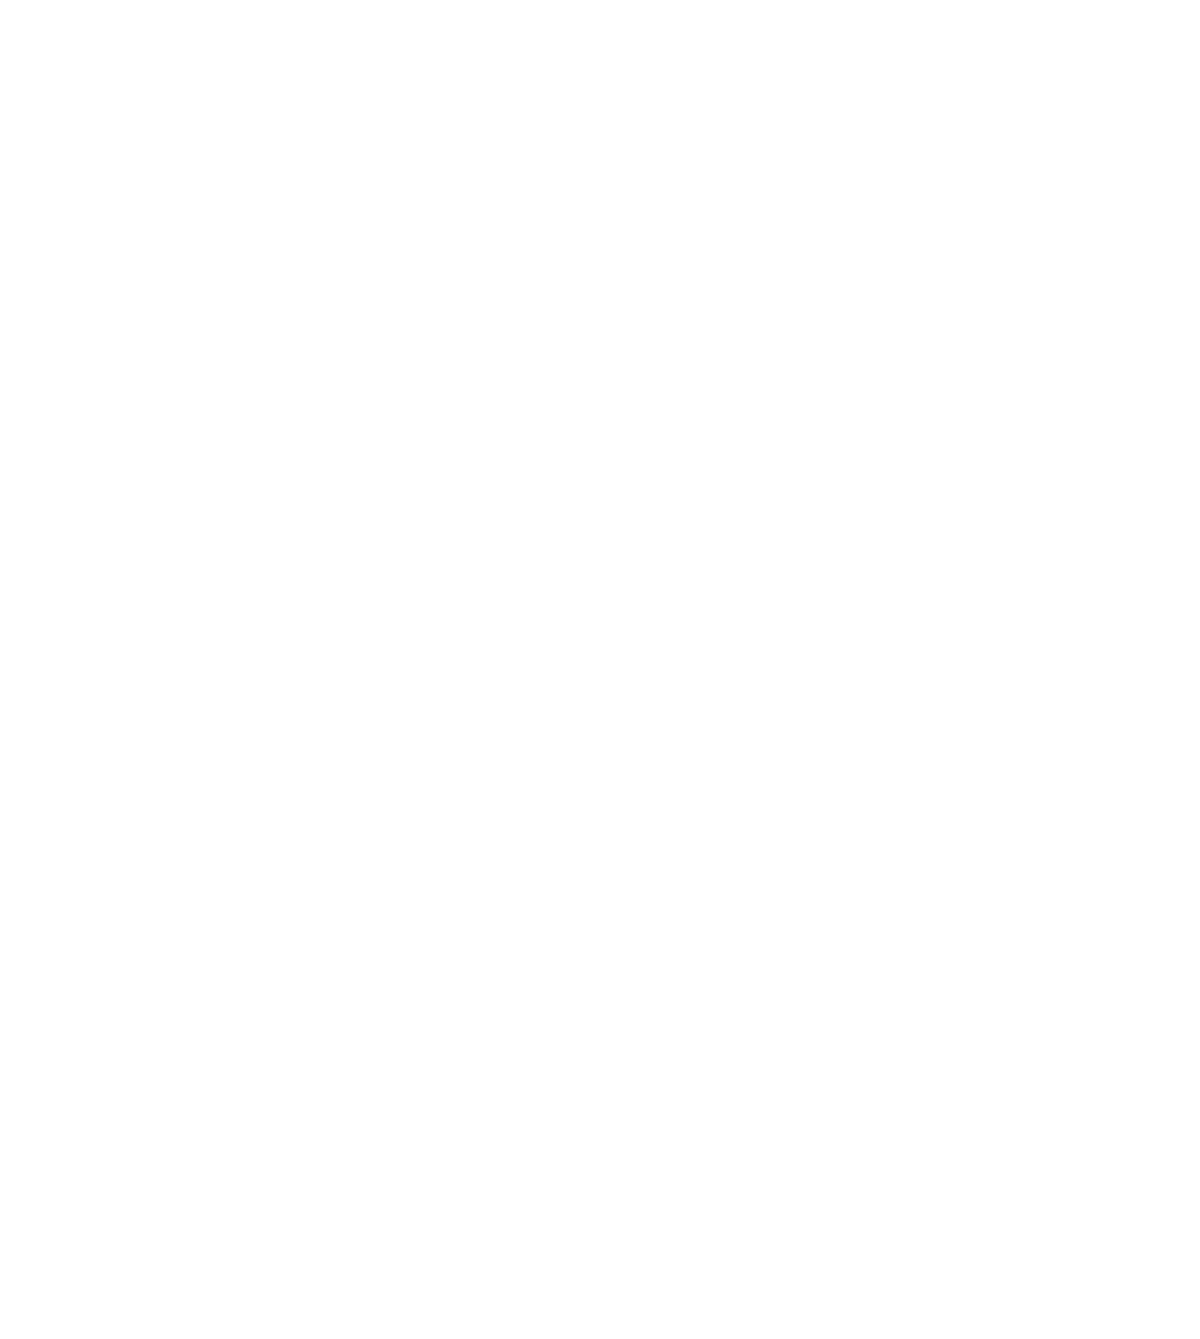 Erbjudande till kunder i Sparbanken Skåne via Sjöbo Padelklubb